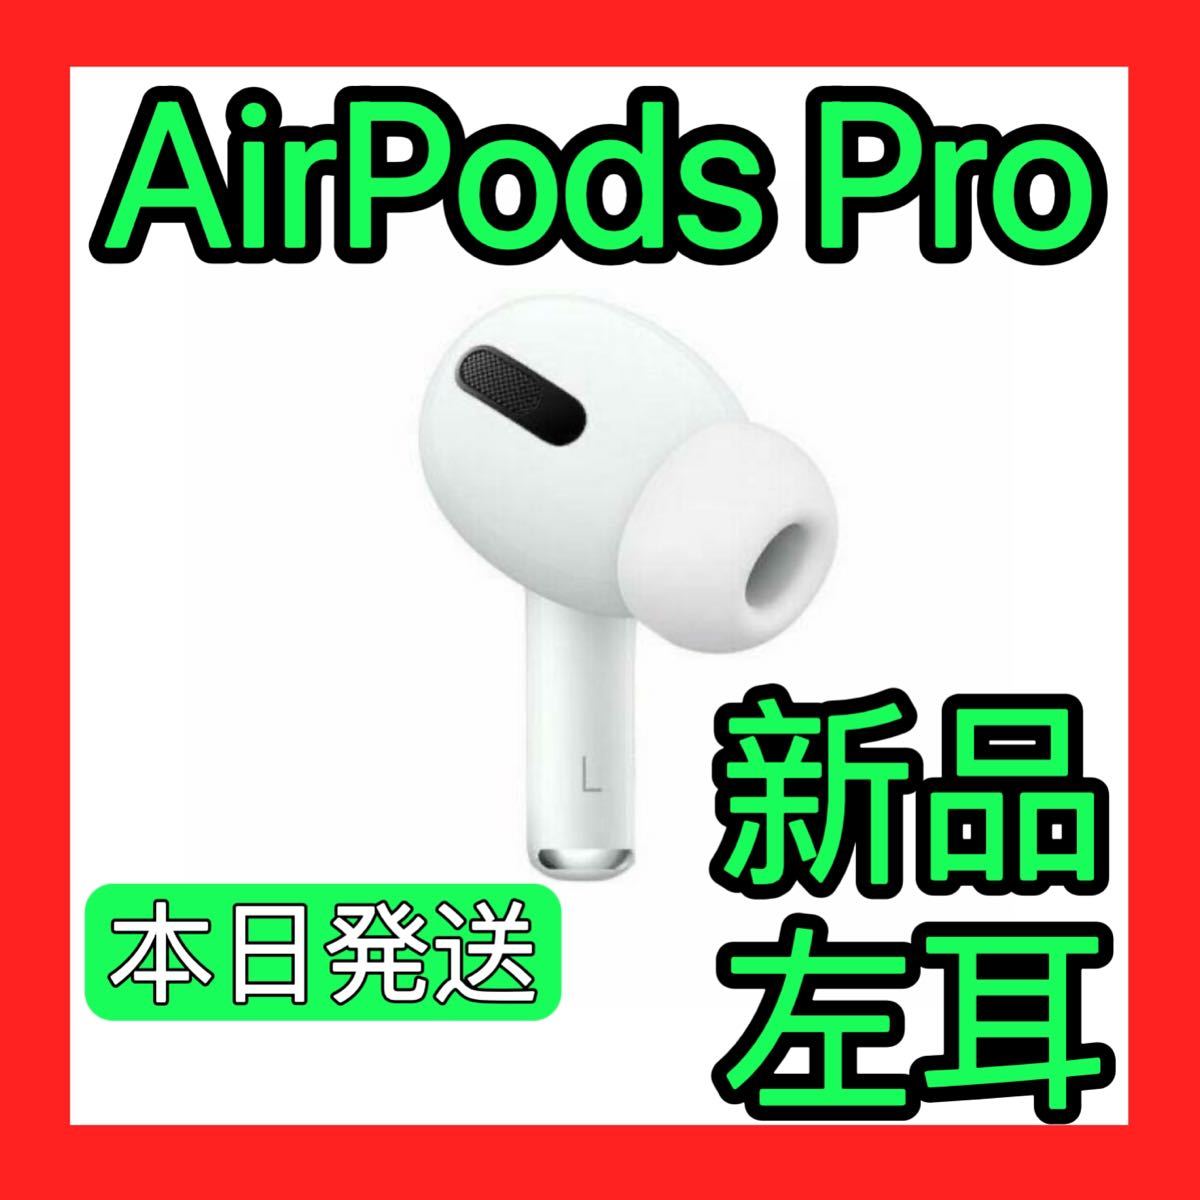 モデル エアーポッズプロ AirPods Pro Apple純正 WEH14-m73042149679 左耳のみ Pro 新品 ブランド